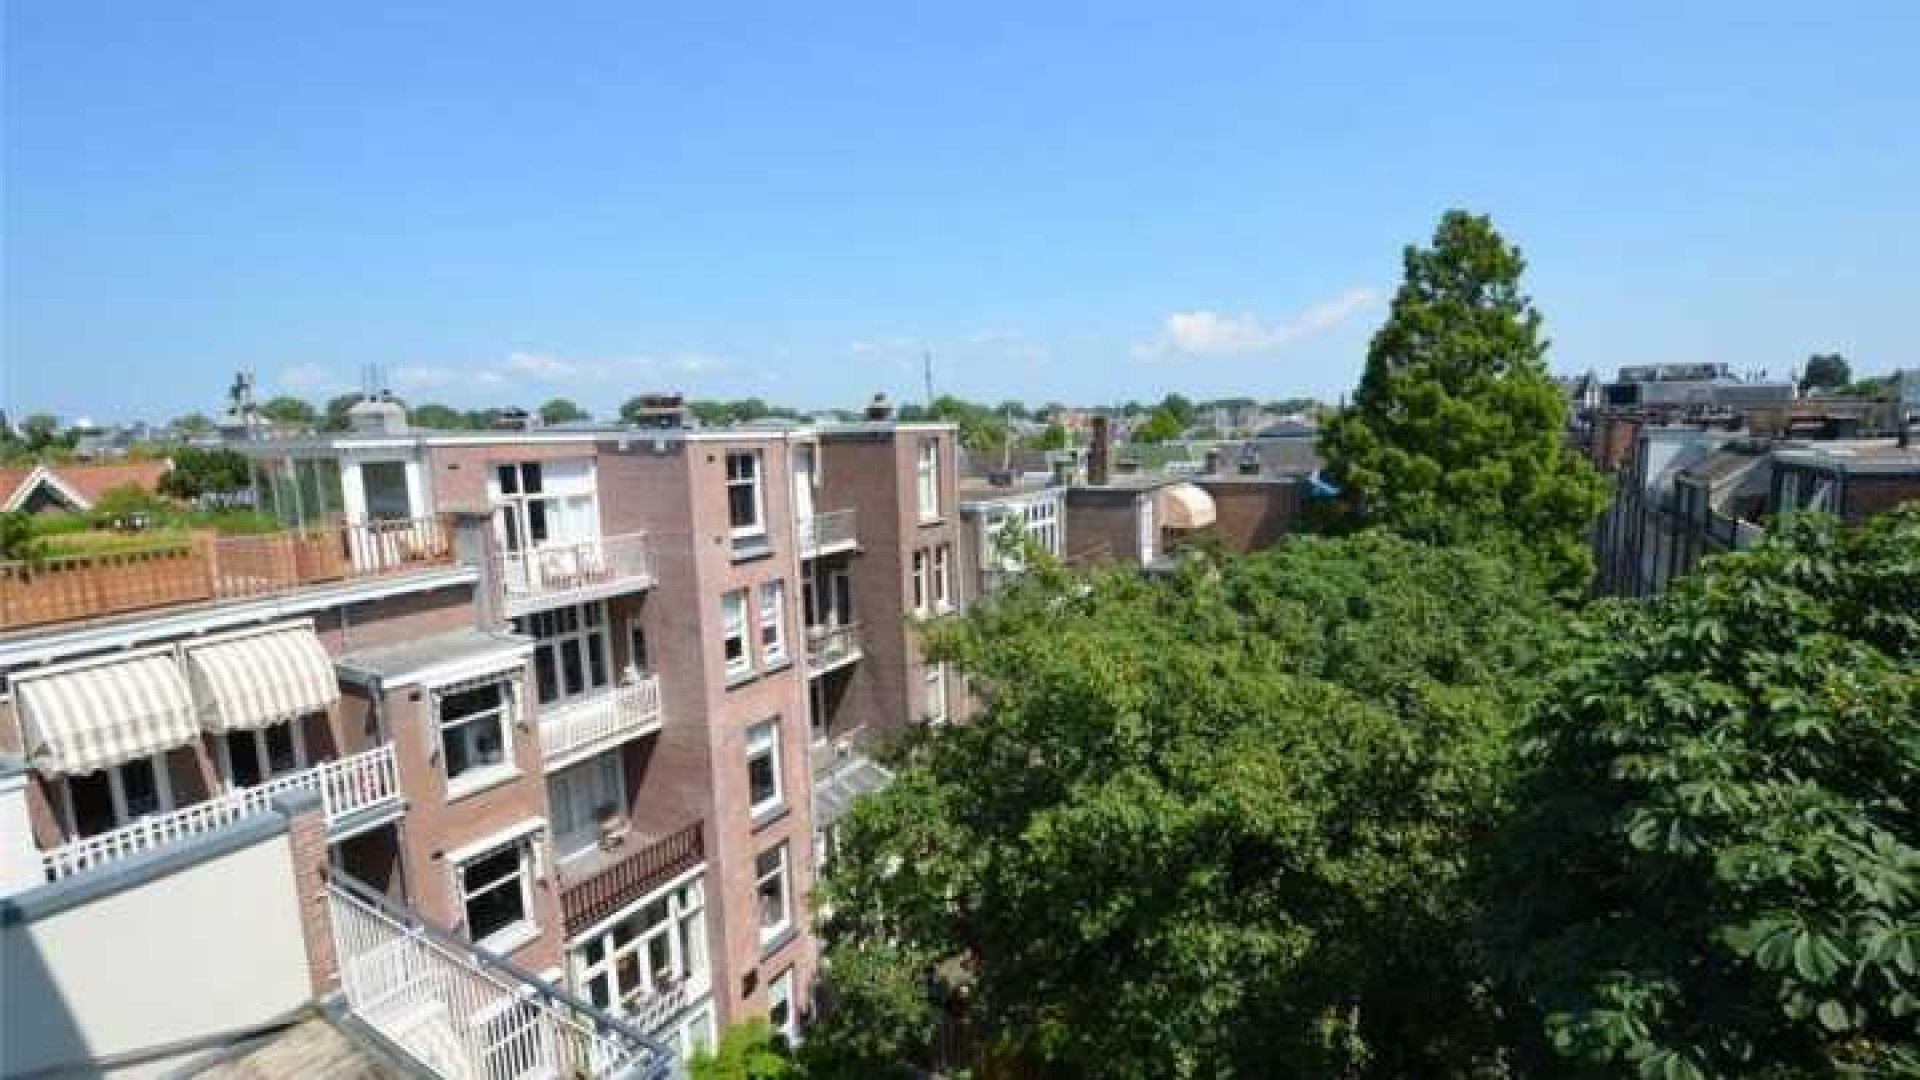 Frank Rijkaard zoekt huurder voor zijn luxe dubbele bovenhuis. Zie foto's 32